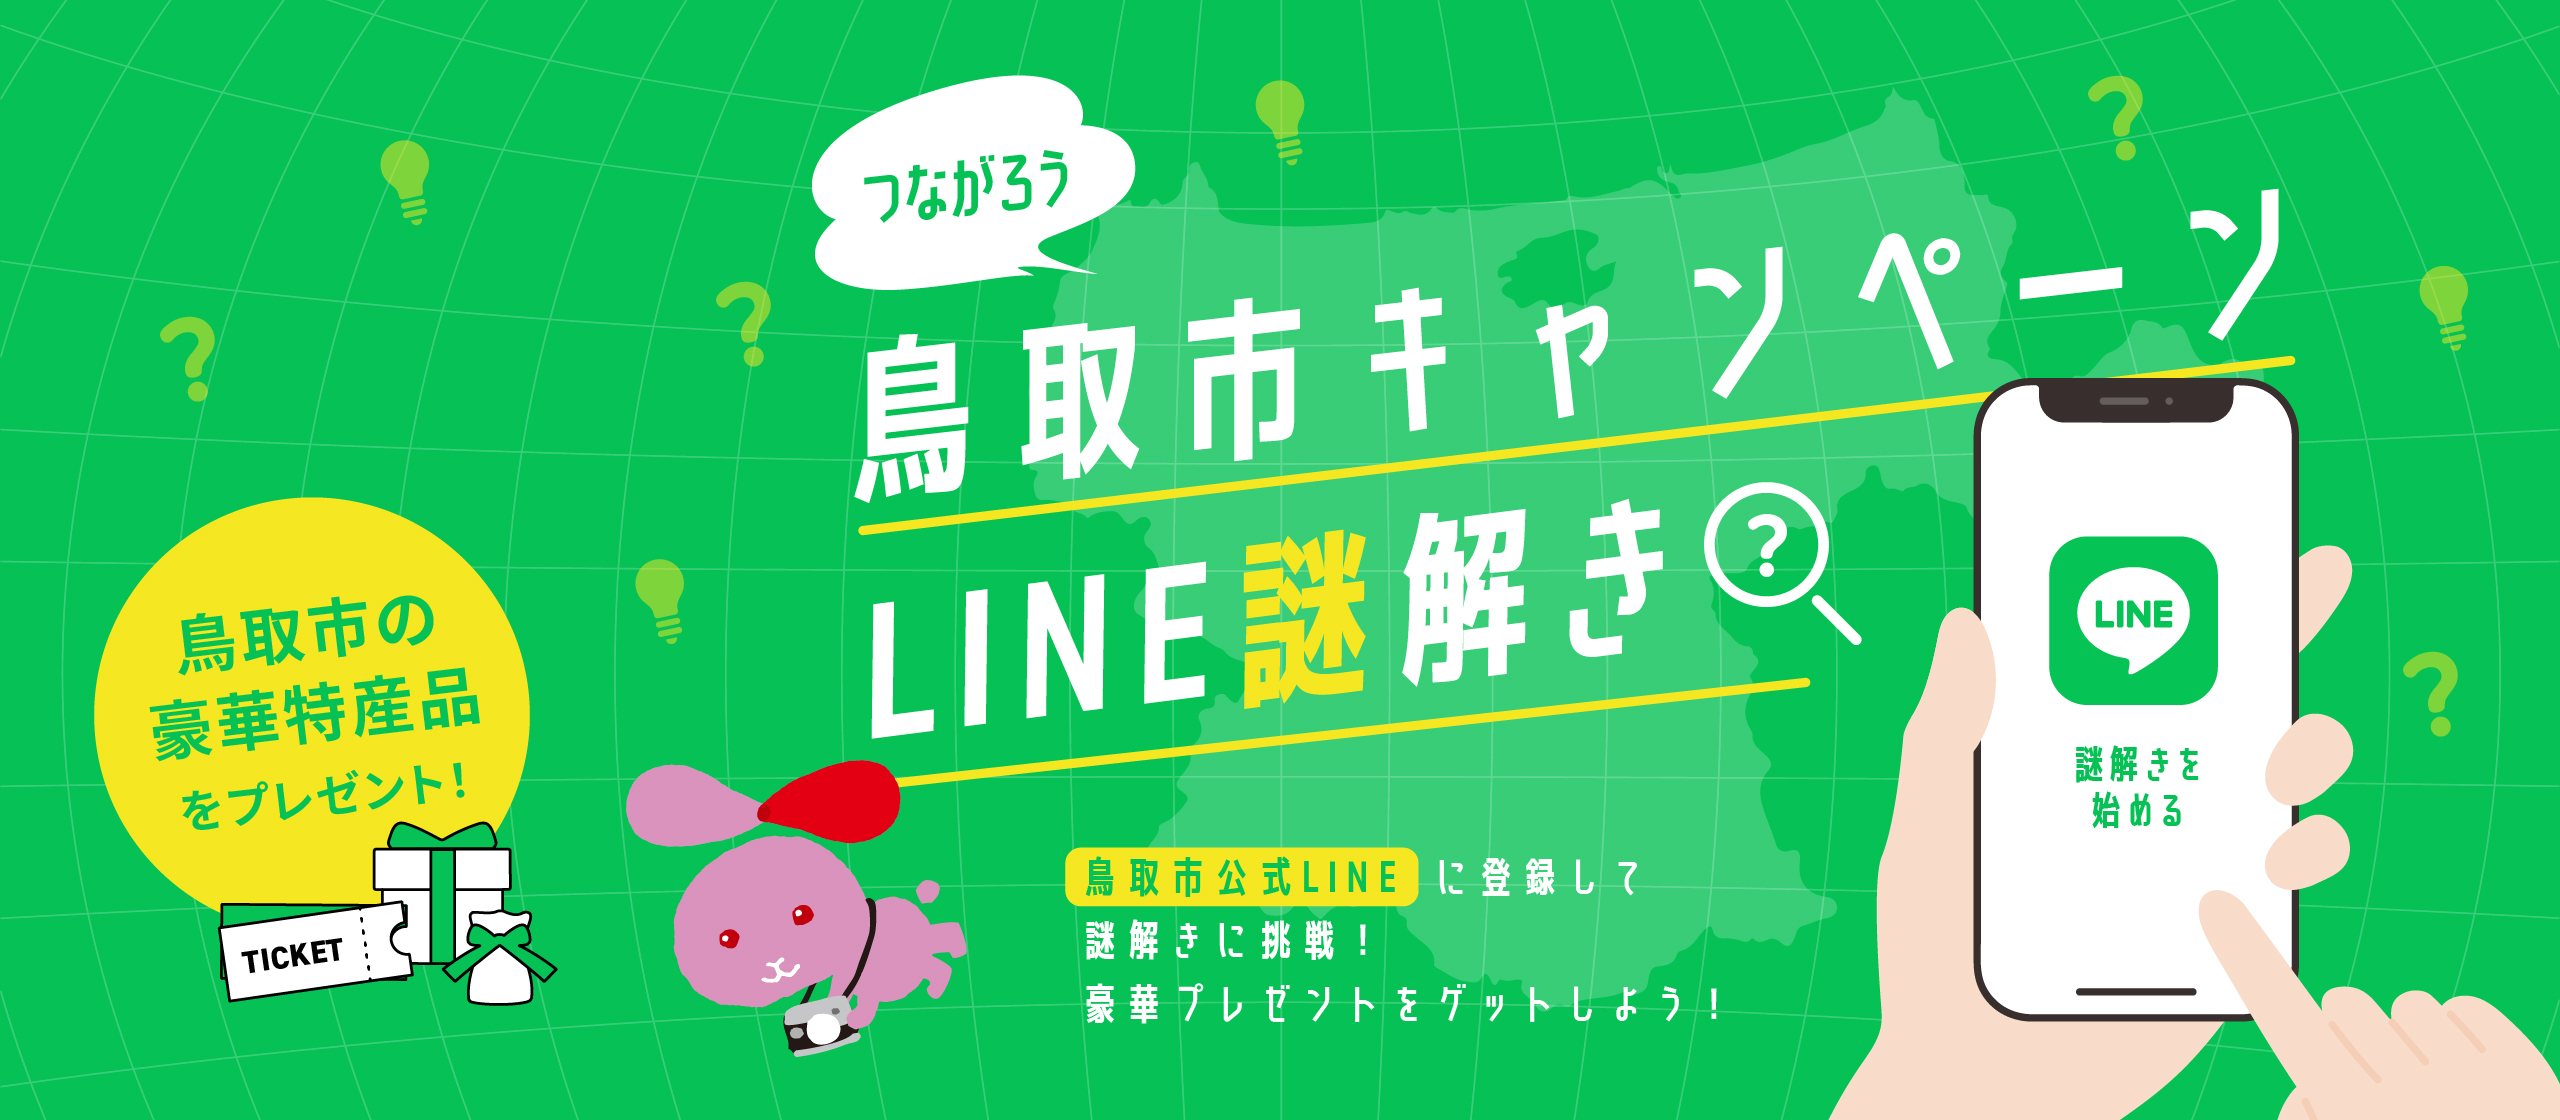 つながろう鳥取市キャンペーン「LINE謎解き」